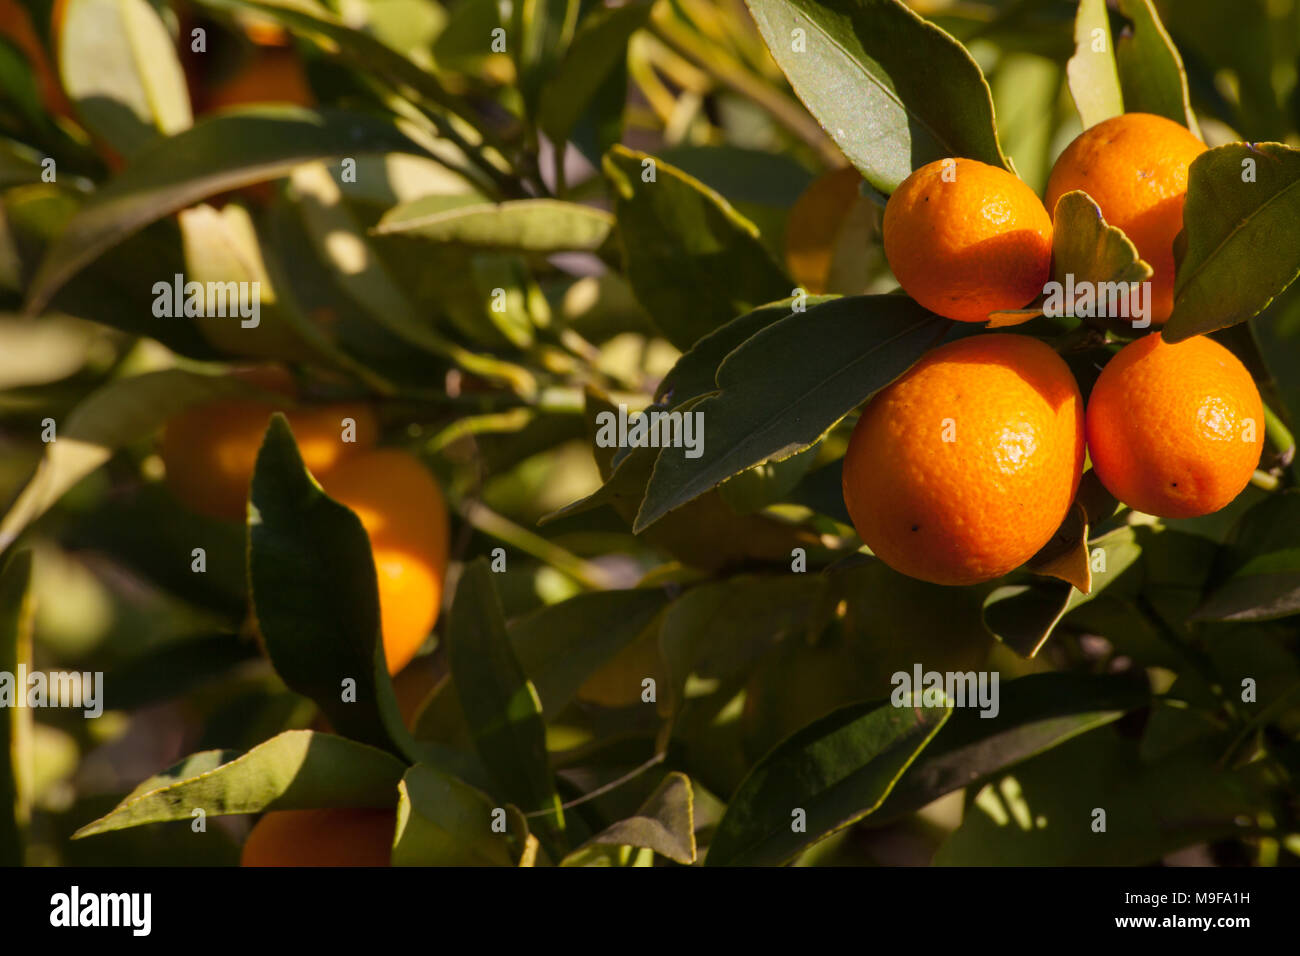 Kumquat (Citrus japonica) Stock Photo